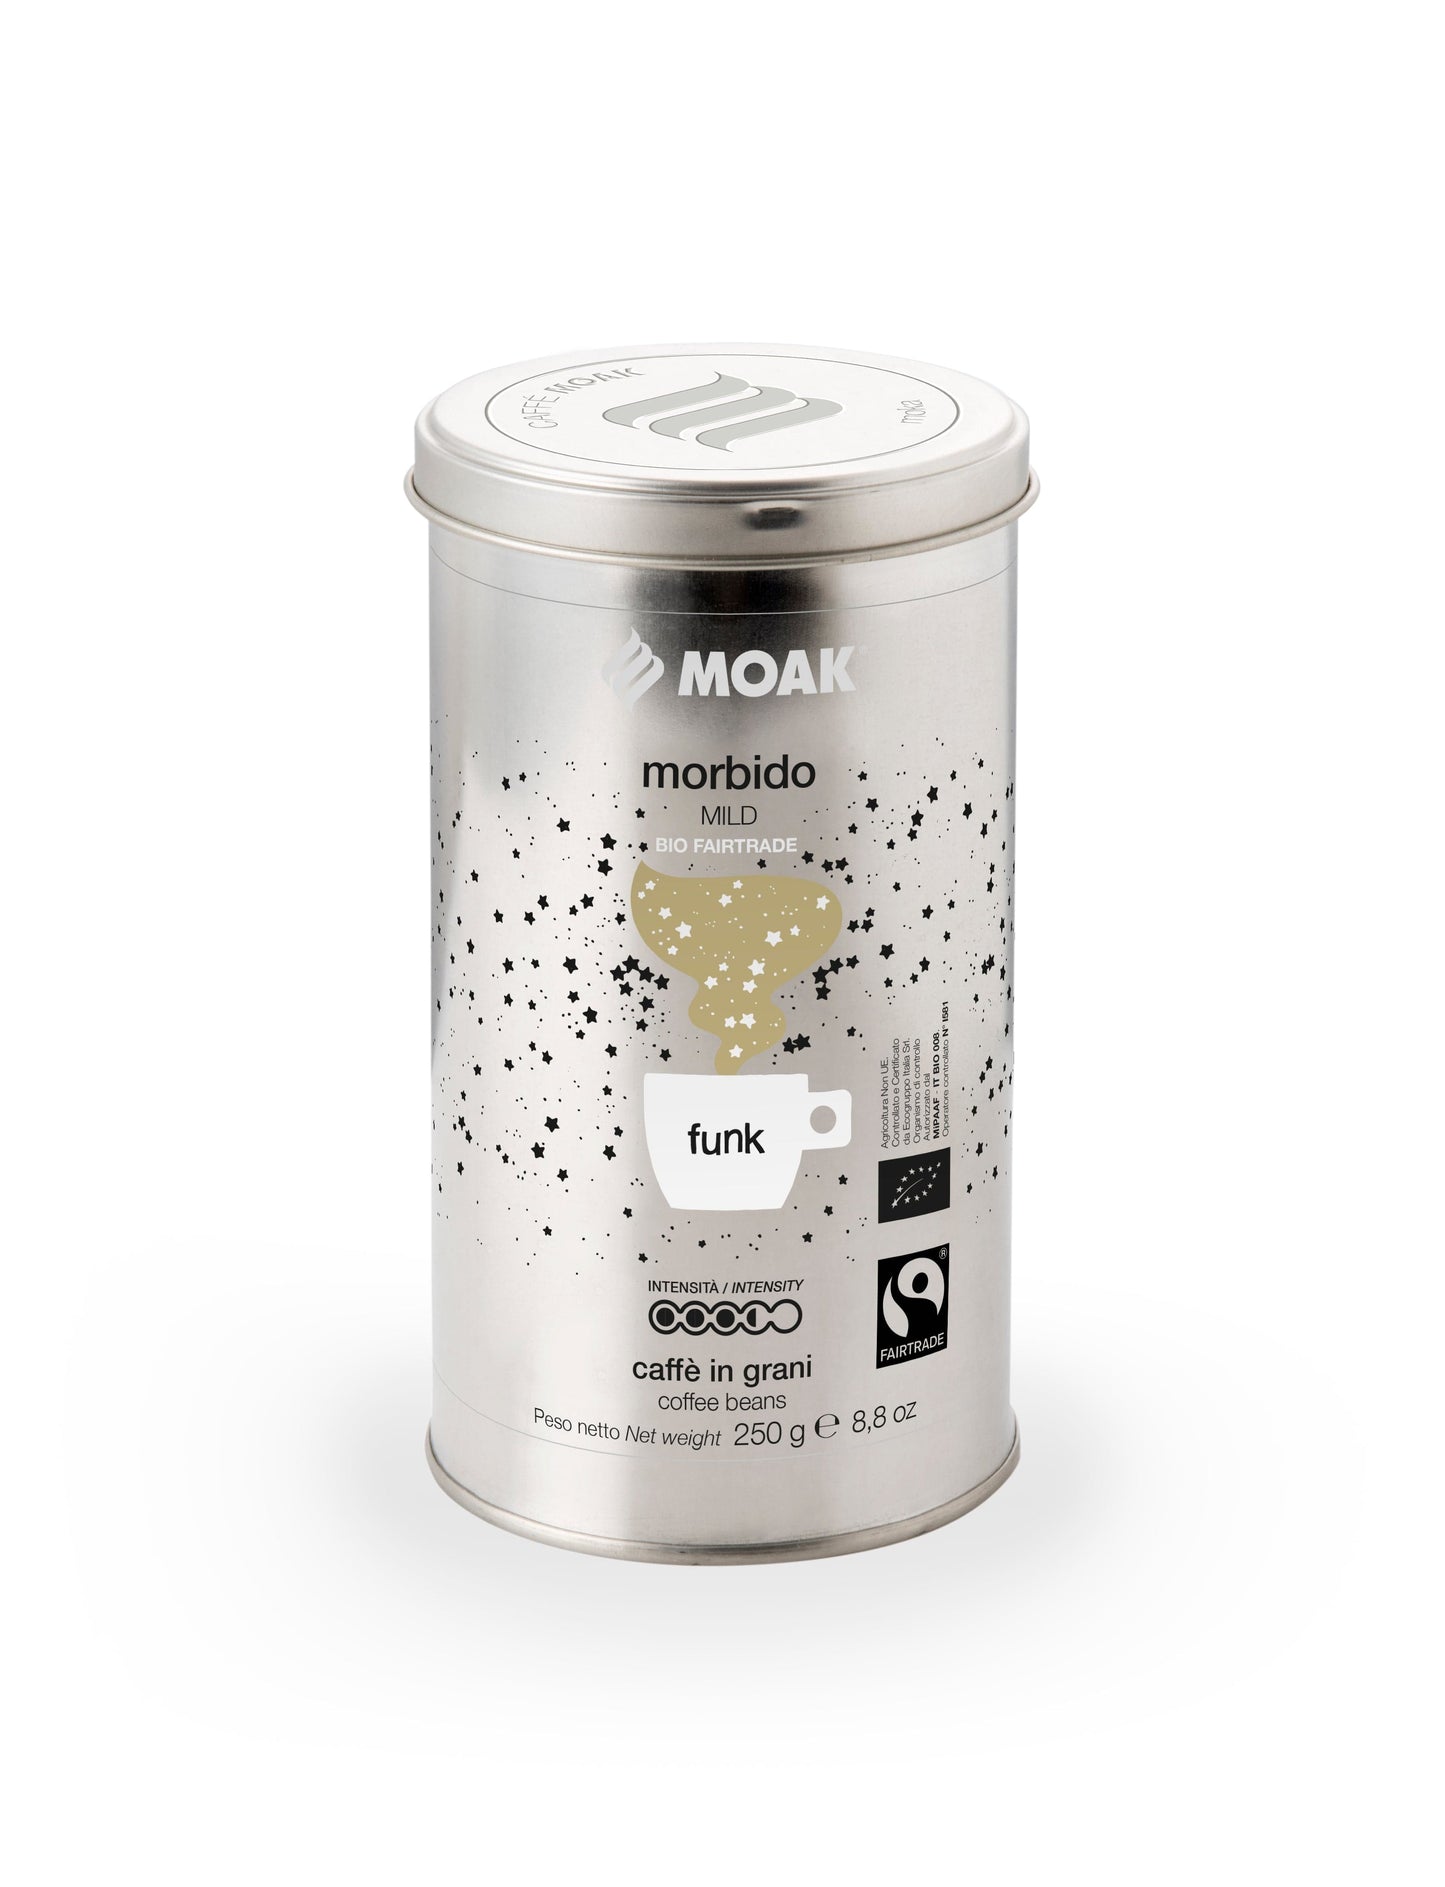 Moak 'Morbido Funk' Coffee Beans 250g